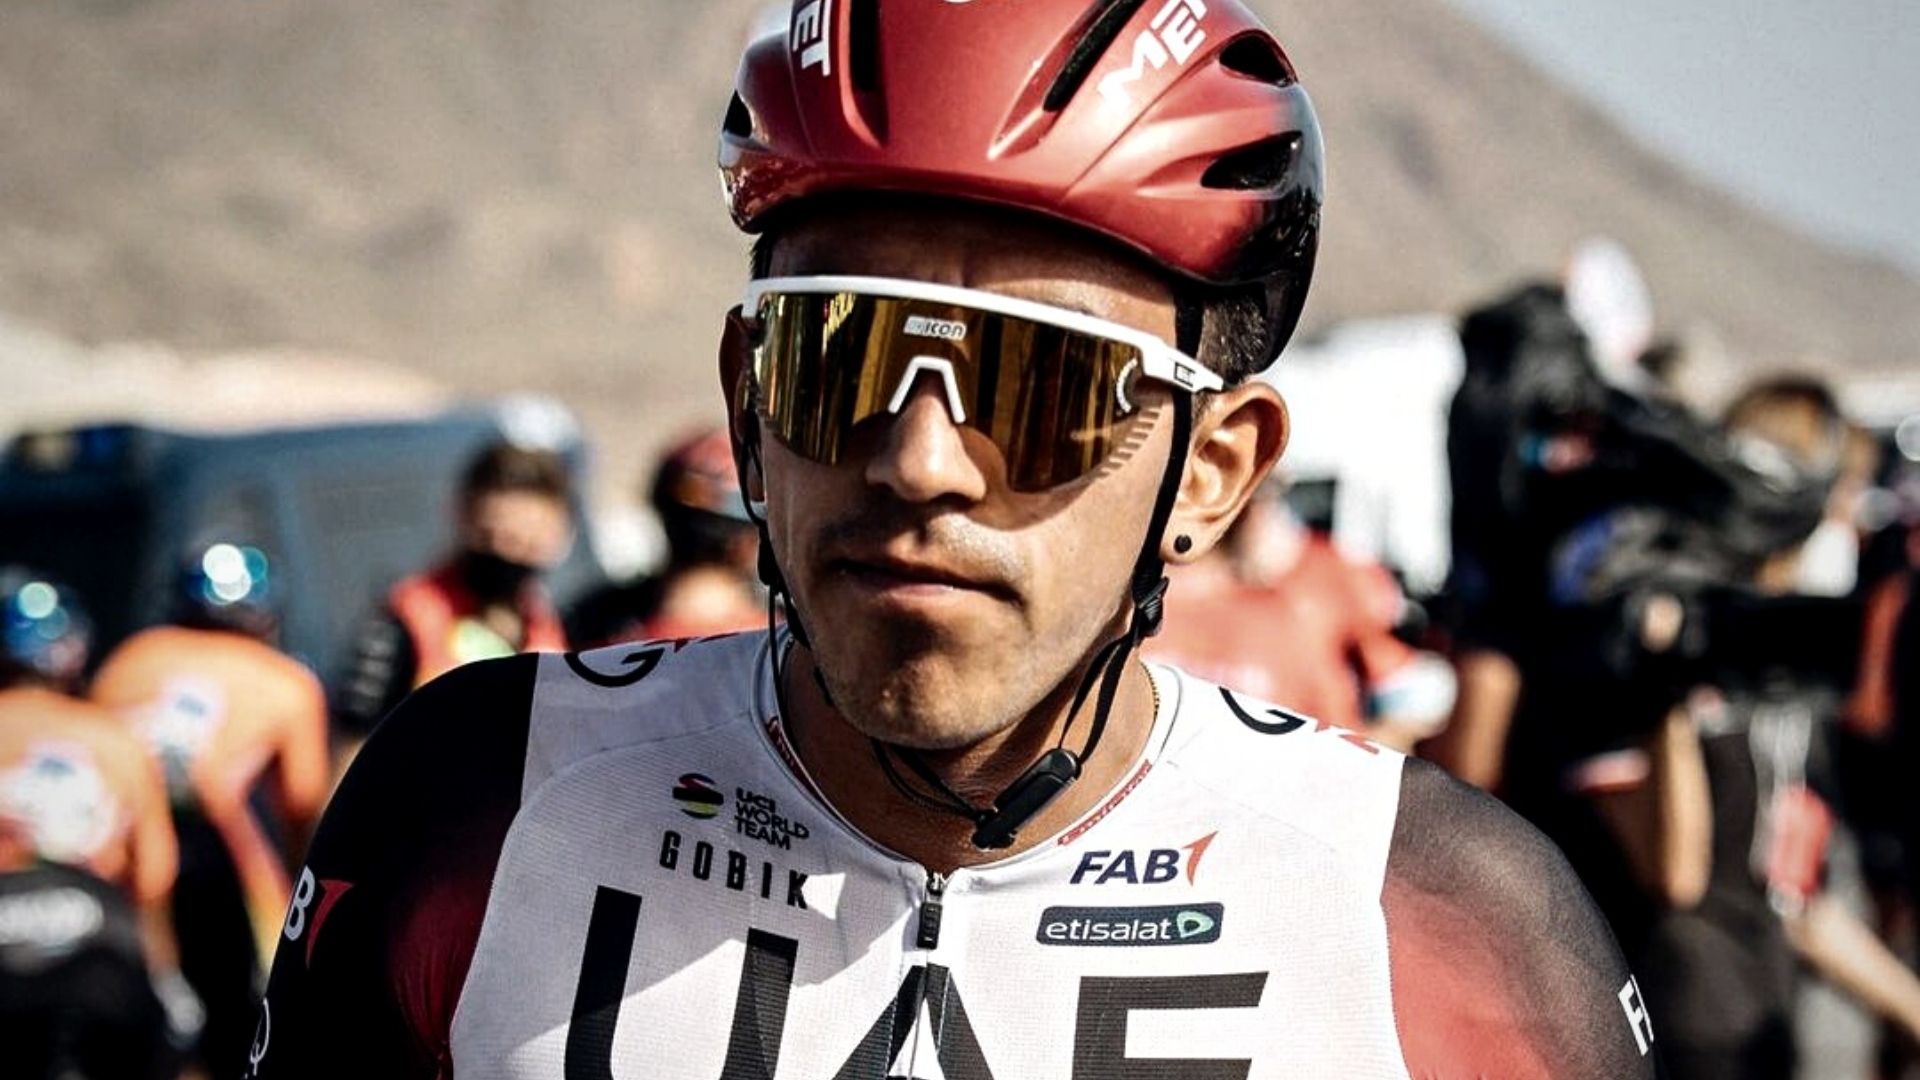 Por qué Nairo, Molano y otras estrellas del ciclismo colombiano aún no tienen contrato en Europa para el 2023